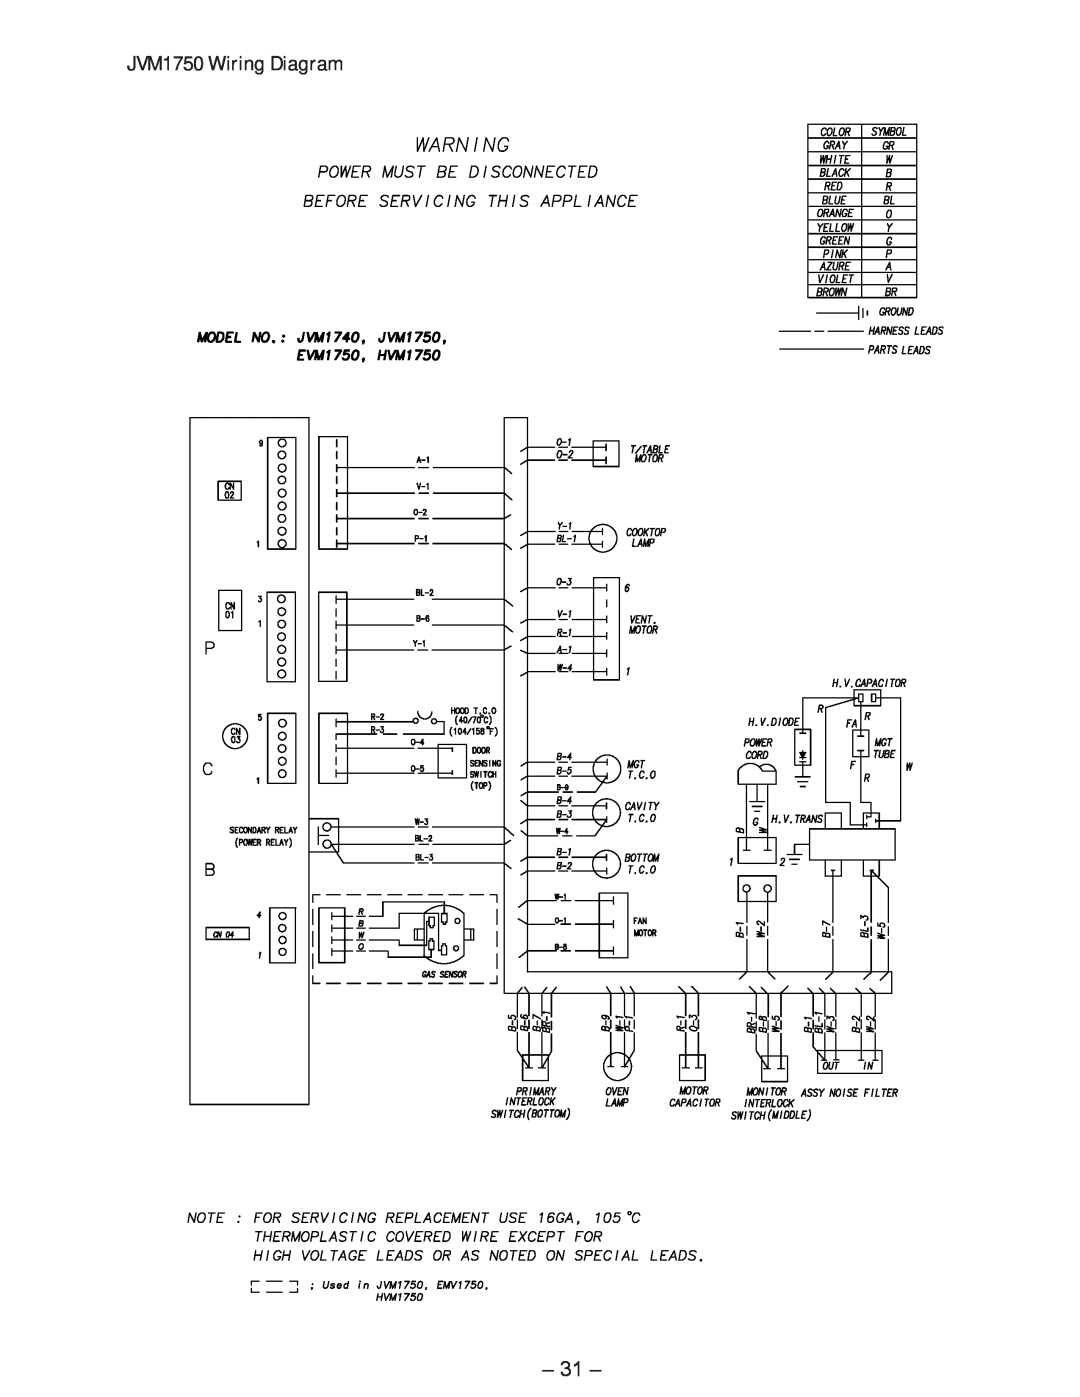 GE manual JVM1750 Wiring Diagram 